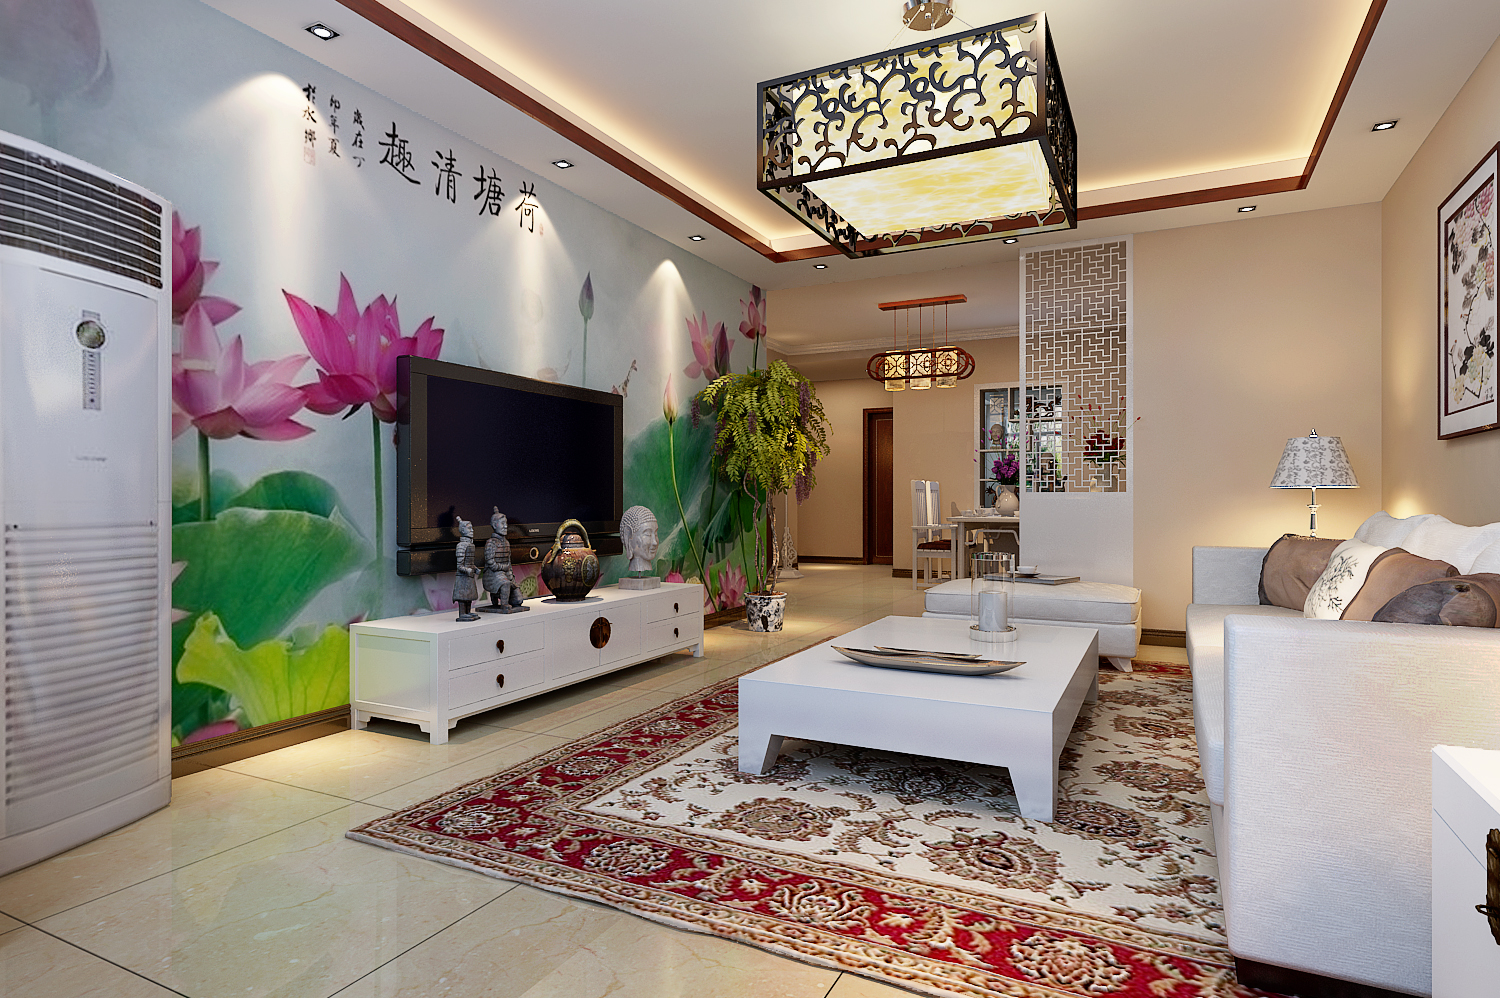 丹石街区 三居 中式 家装 客厅图片来自郑州实创装饰啊静在丹石街区120平简中三居的分享